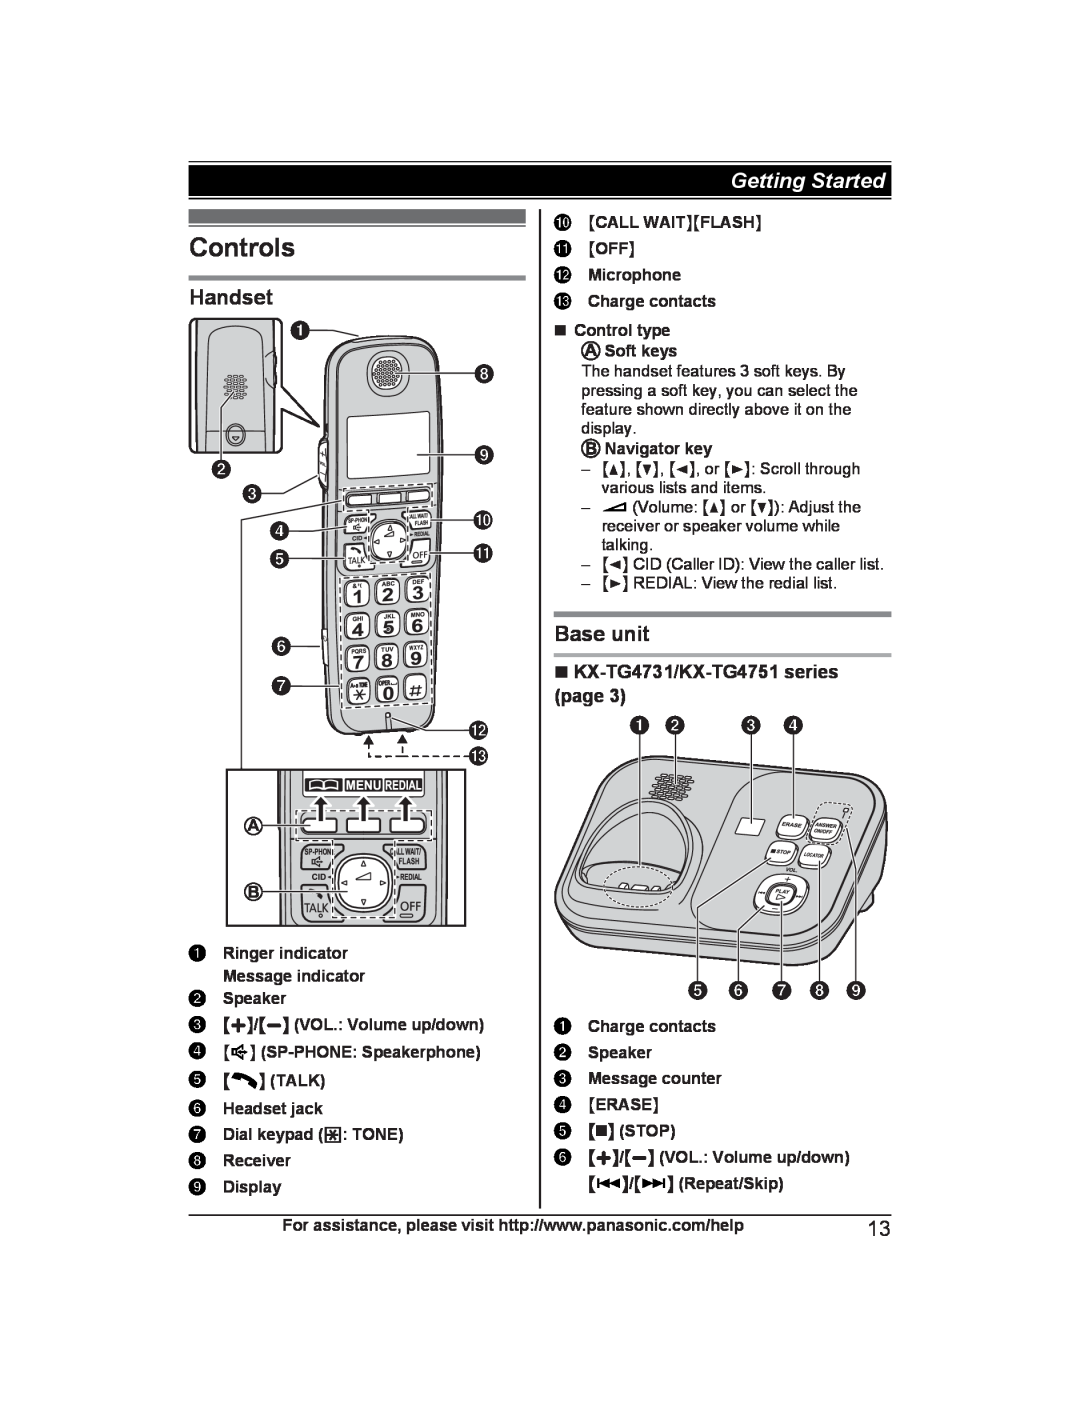 Panasonic KX-TG4741B, KX-TG223SK Controls, Handset, Base unit, F G L M, n KX-TG4731/KX-TG4751 series page A B C D E F G H 